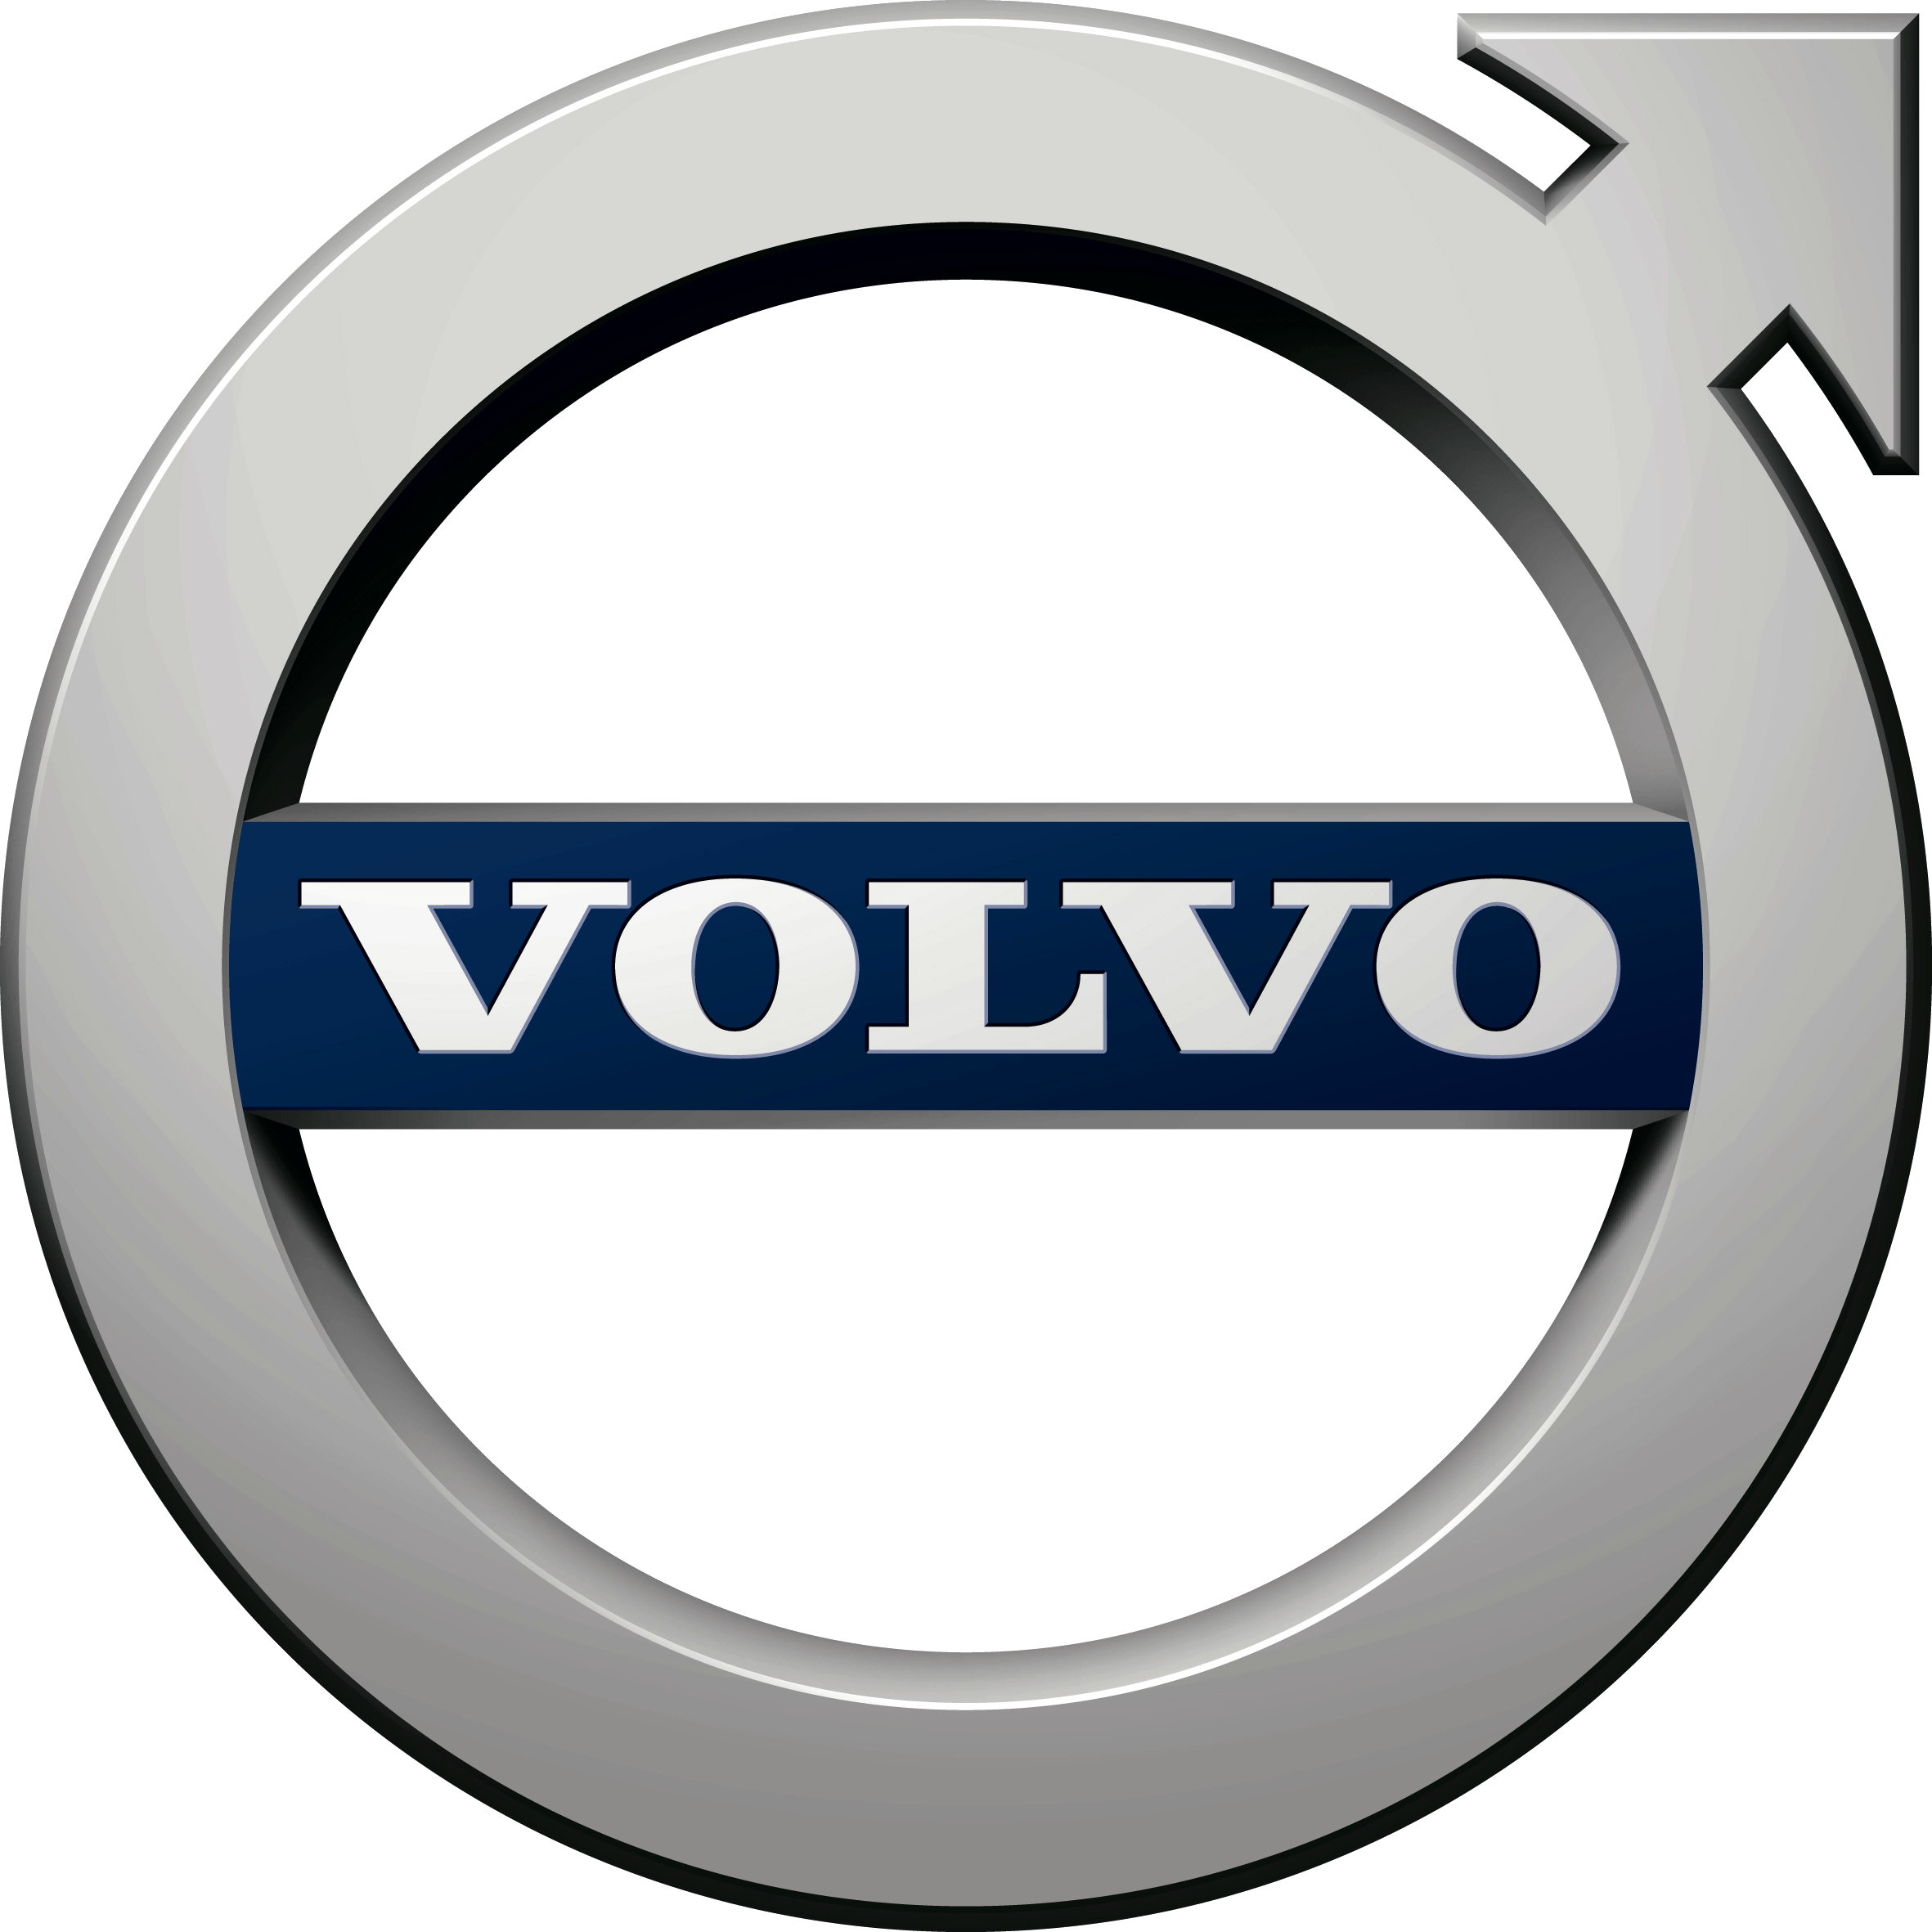 Car Symbols Logo - Volvo Logo, Volvo Car Symbol Meaning and History | Car Brand Names.com